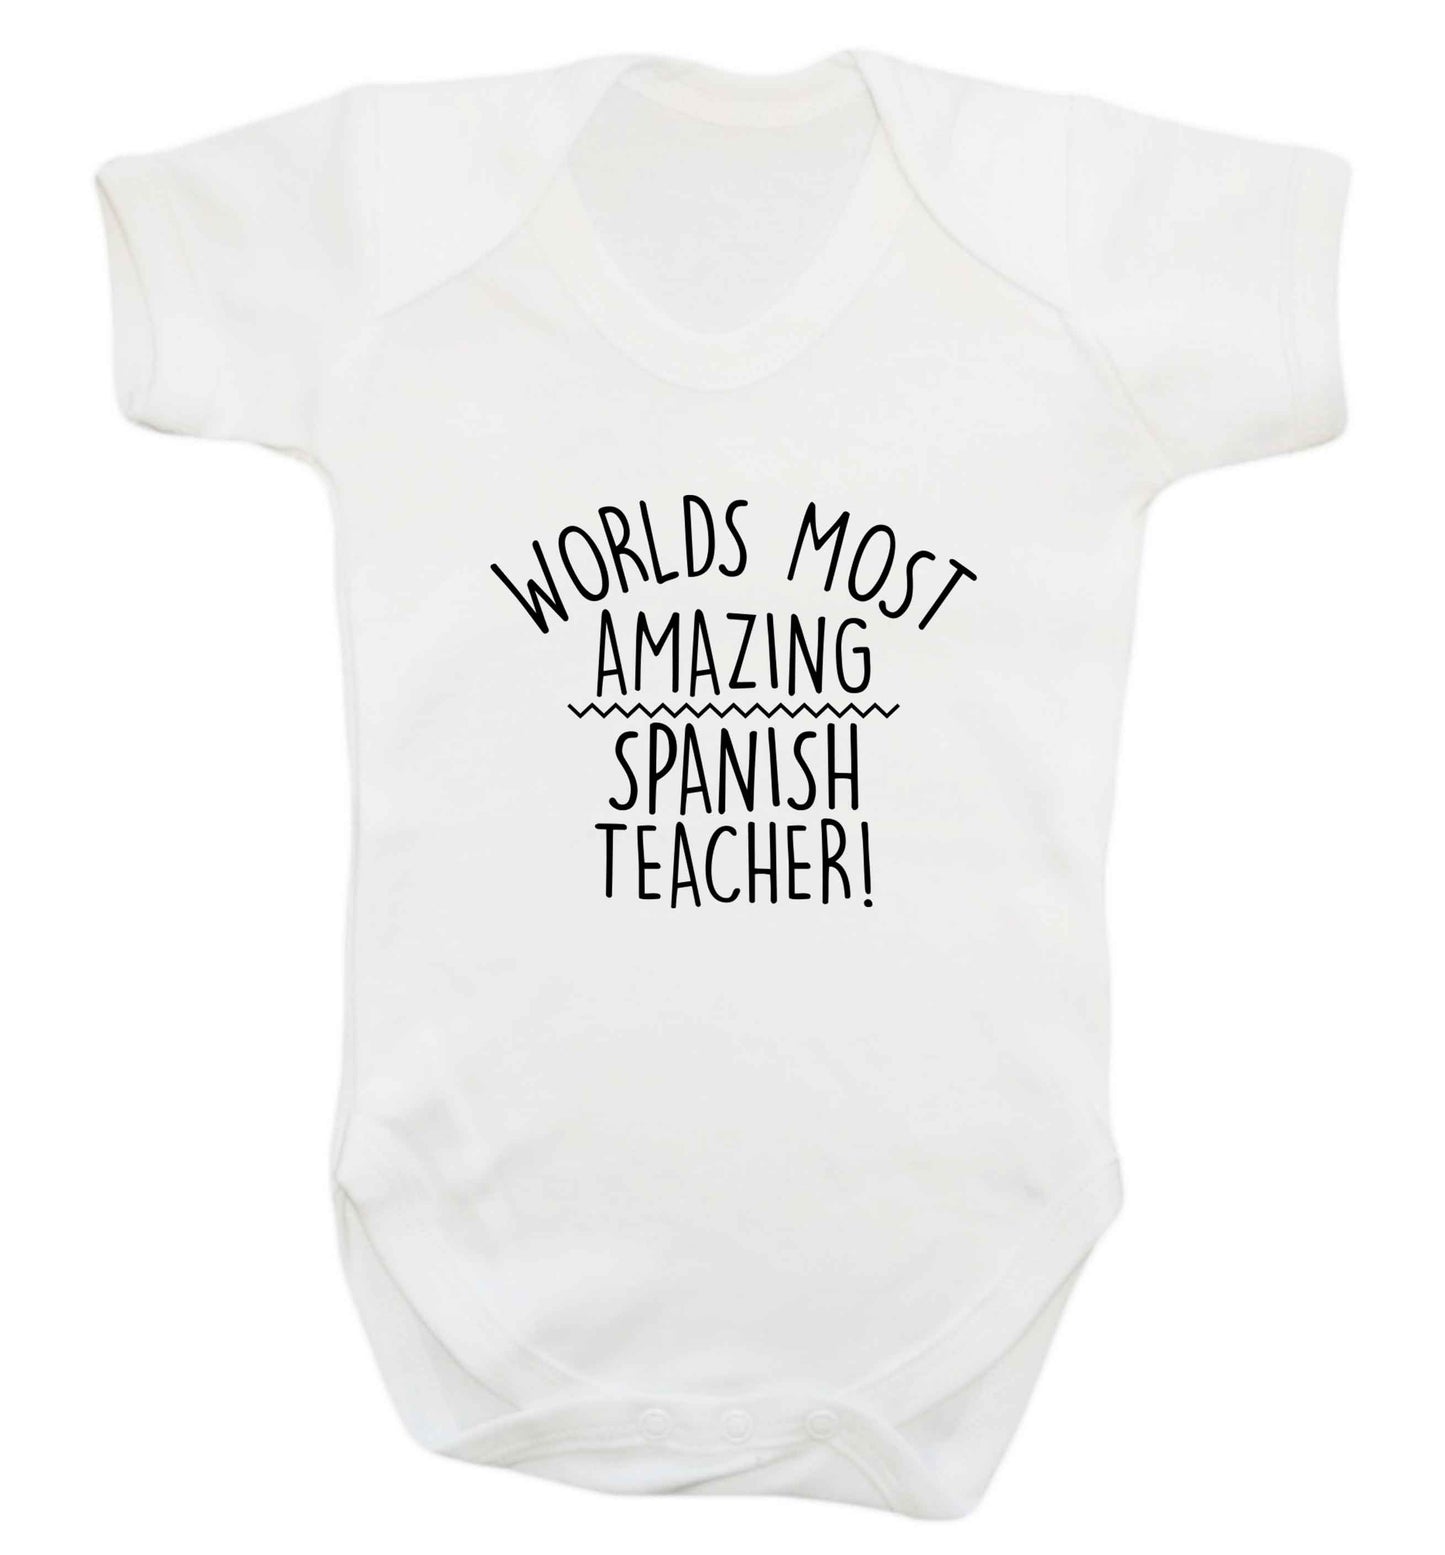 Worlds most amazing Spanish teacher baby vest white 18-24 months